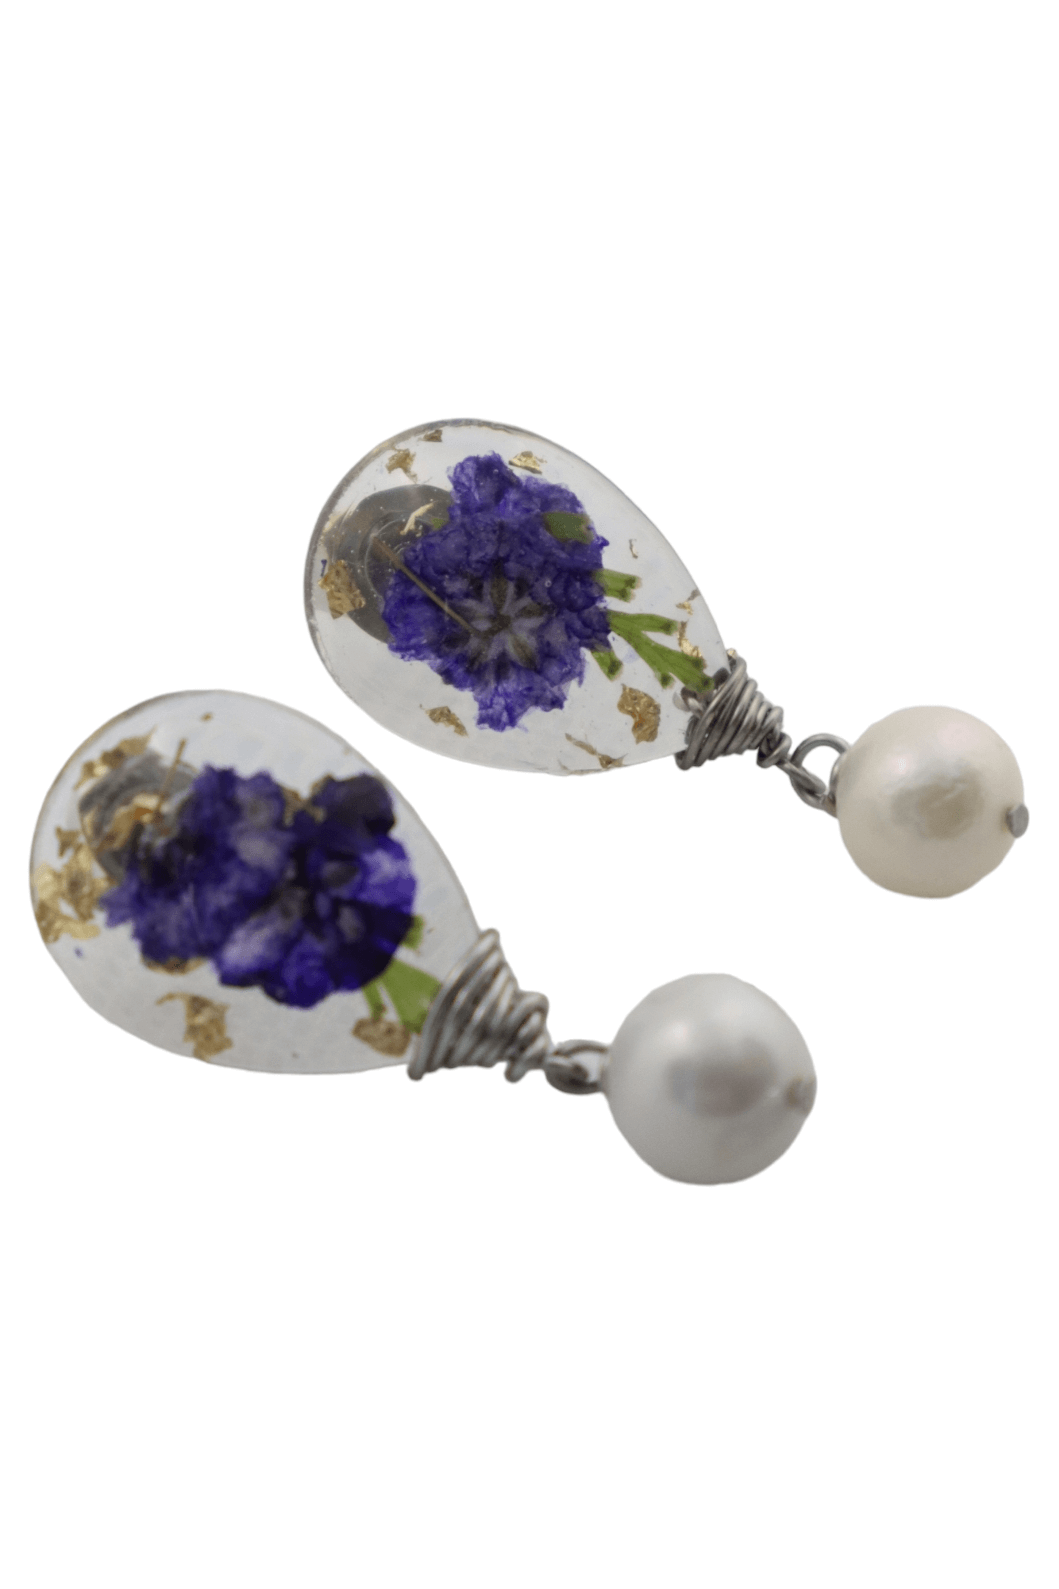 Flower-pressed-jewelry-flower-jewelry-romantic-jewelry-Kaleidoscopes-And-Polka-Dots